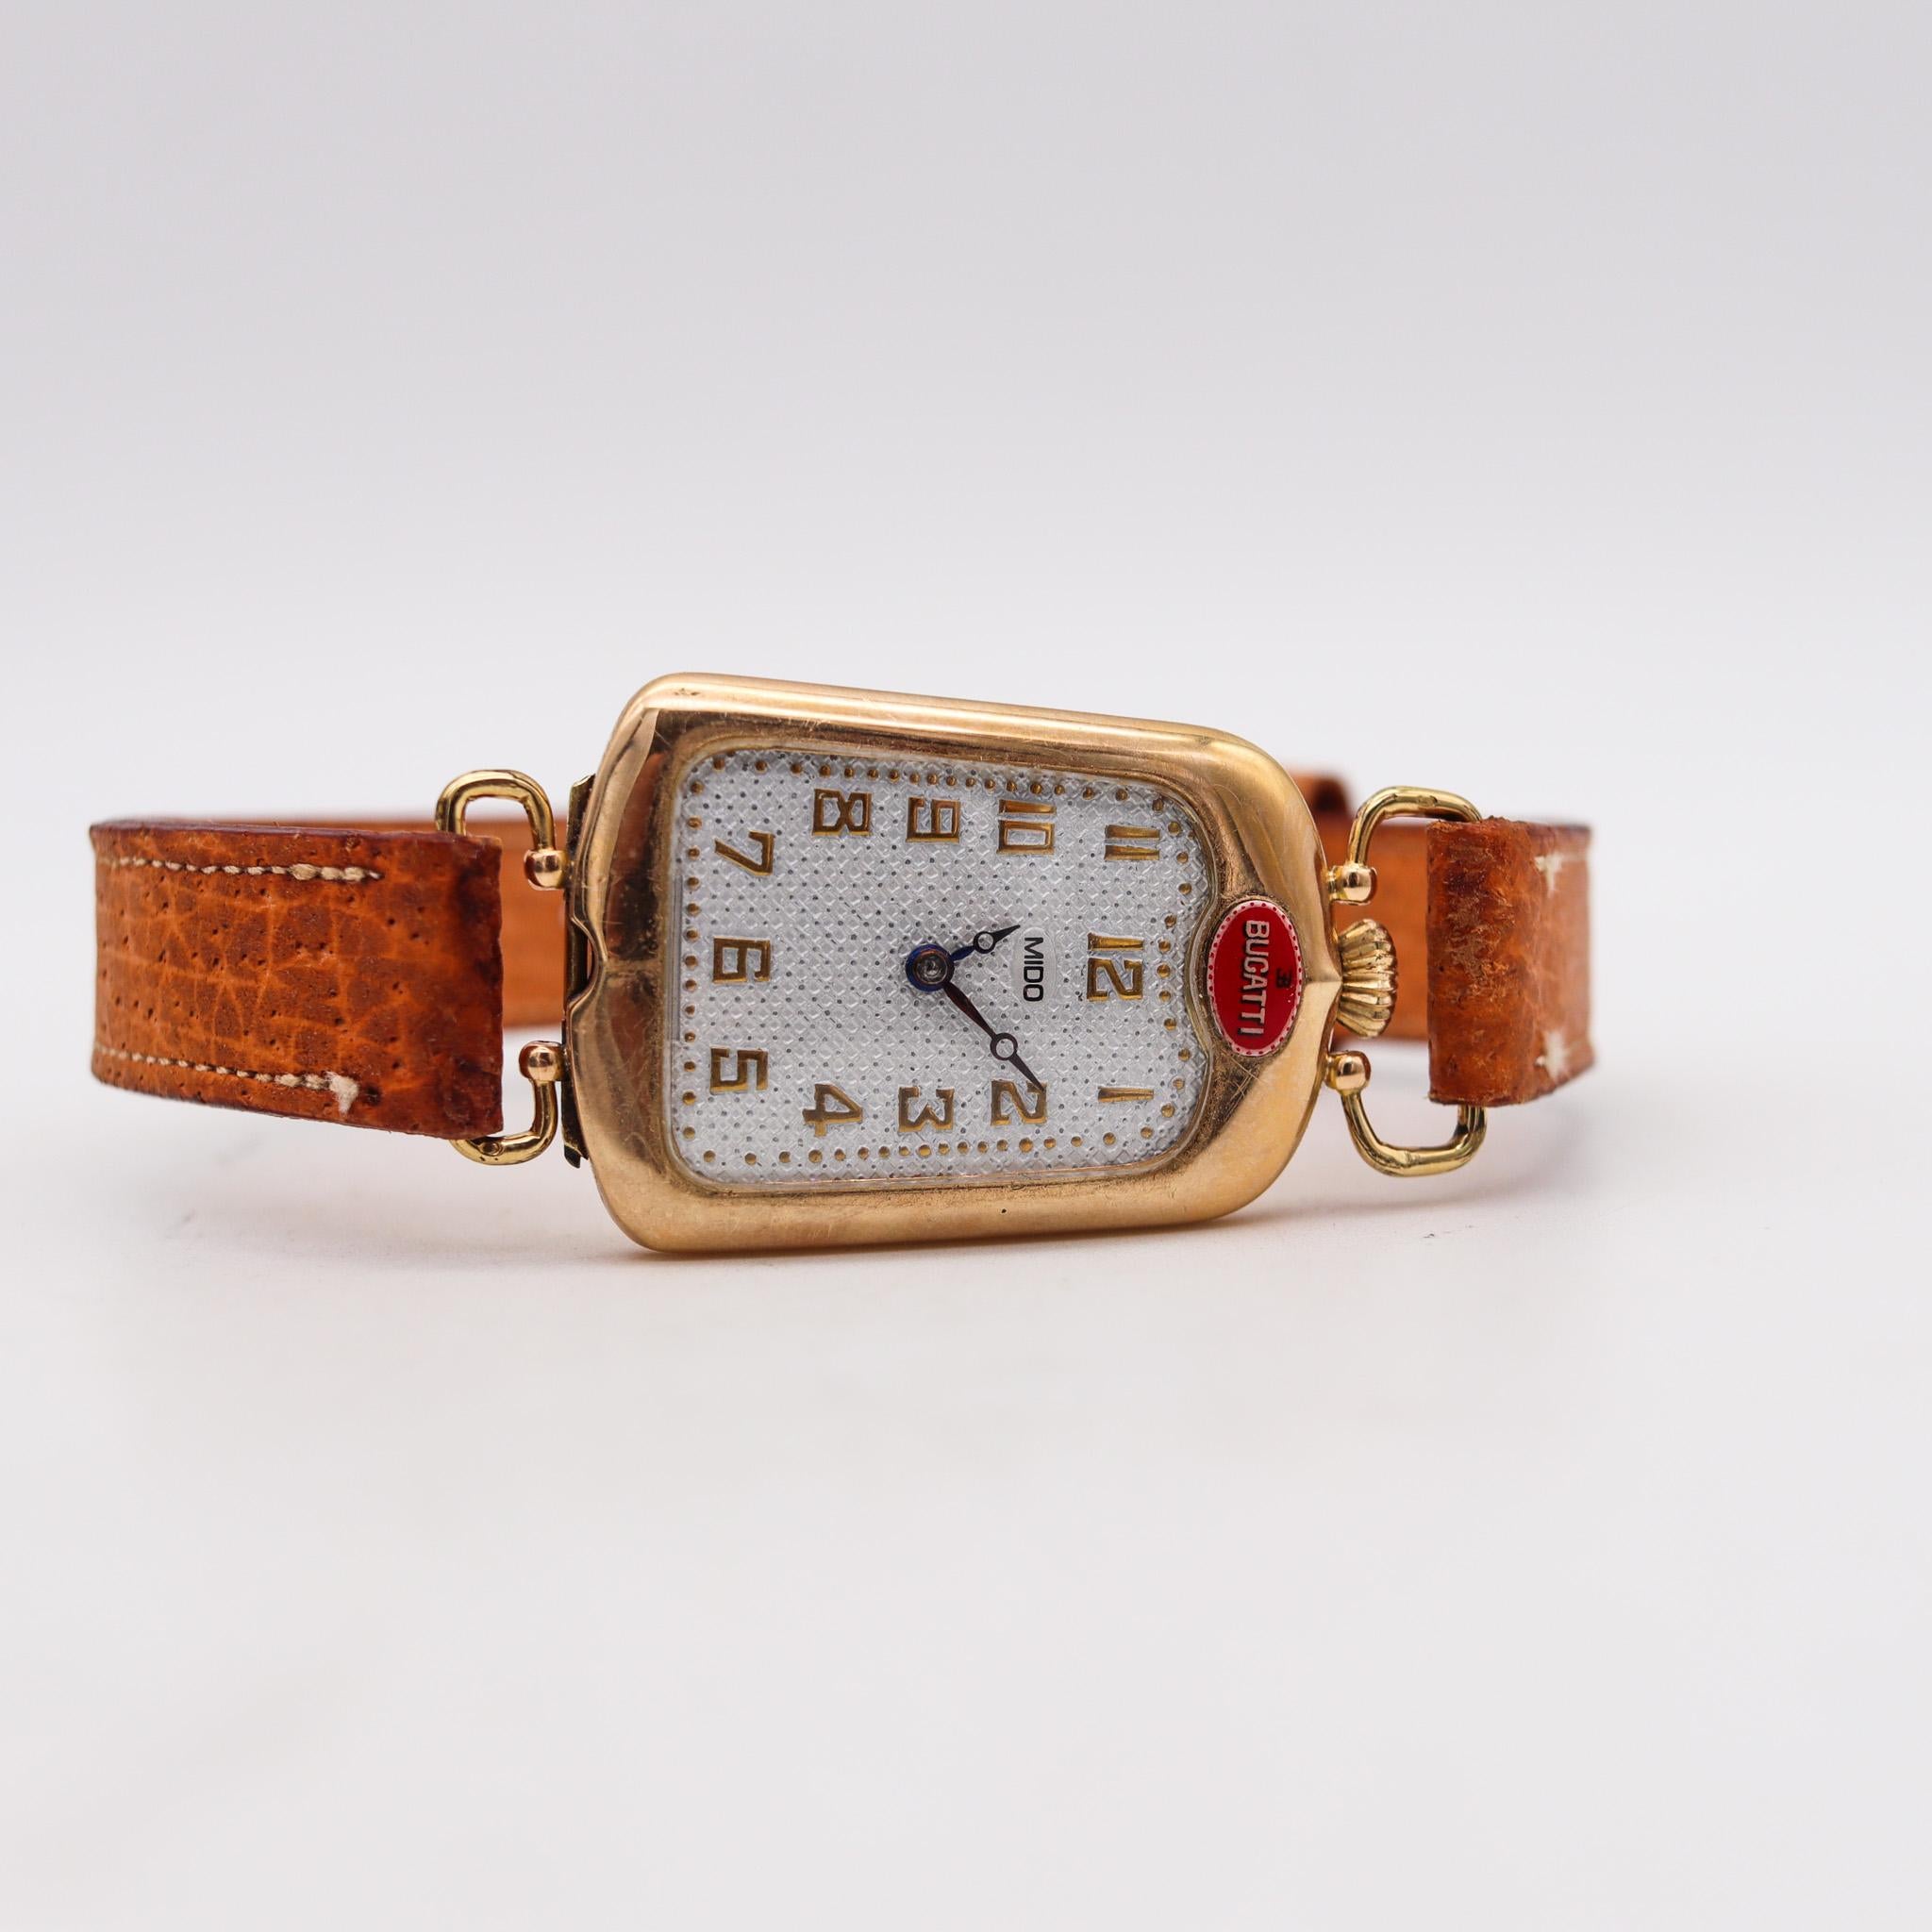 Montre-bracelet Radiator conçue par Bugatti.

Une montre-bracelet déco extrêmement rare et inhabituelle, créée en Suisse par Mido pour la société Bugatti. Réalisé pendant la période art déco en forme de calandre d'automobile, dans les années 1930.